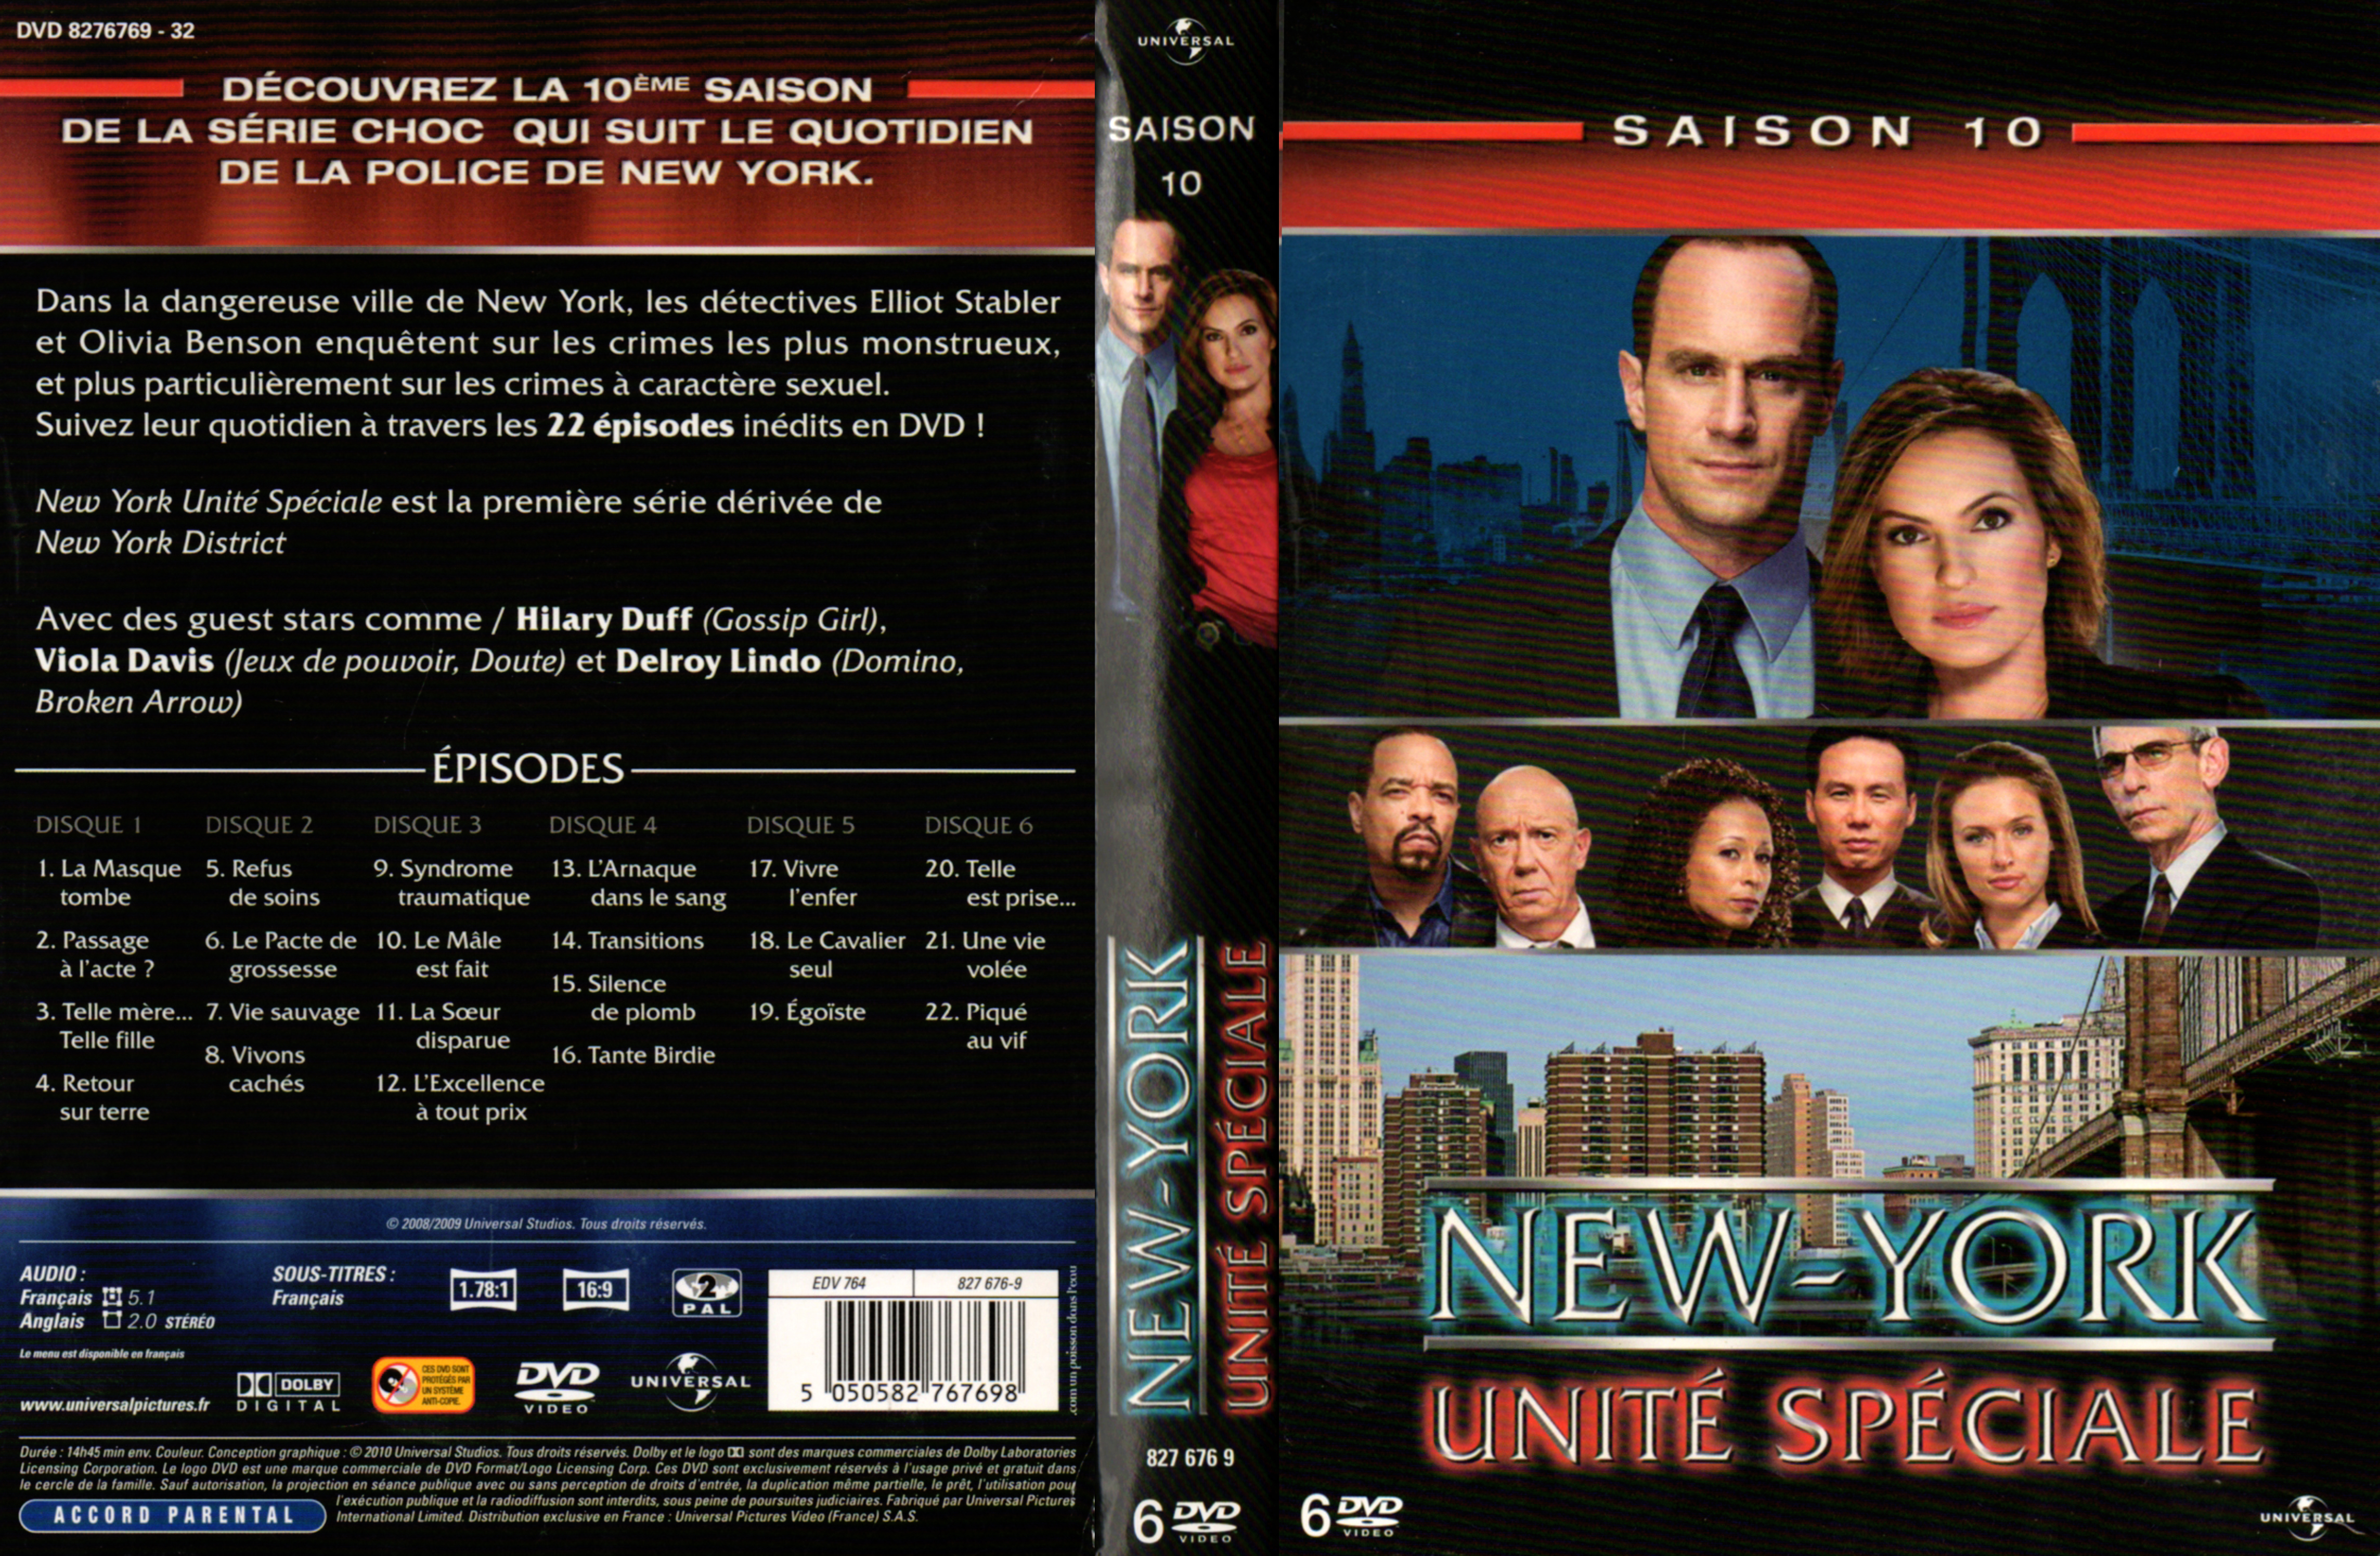 Jaquette DVD New York unit spciale saison 10 COFFRET